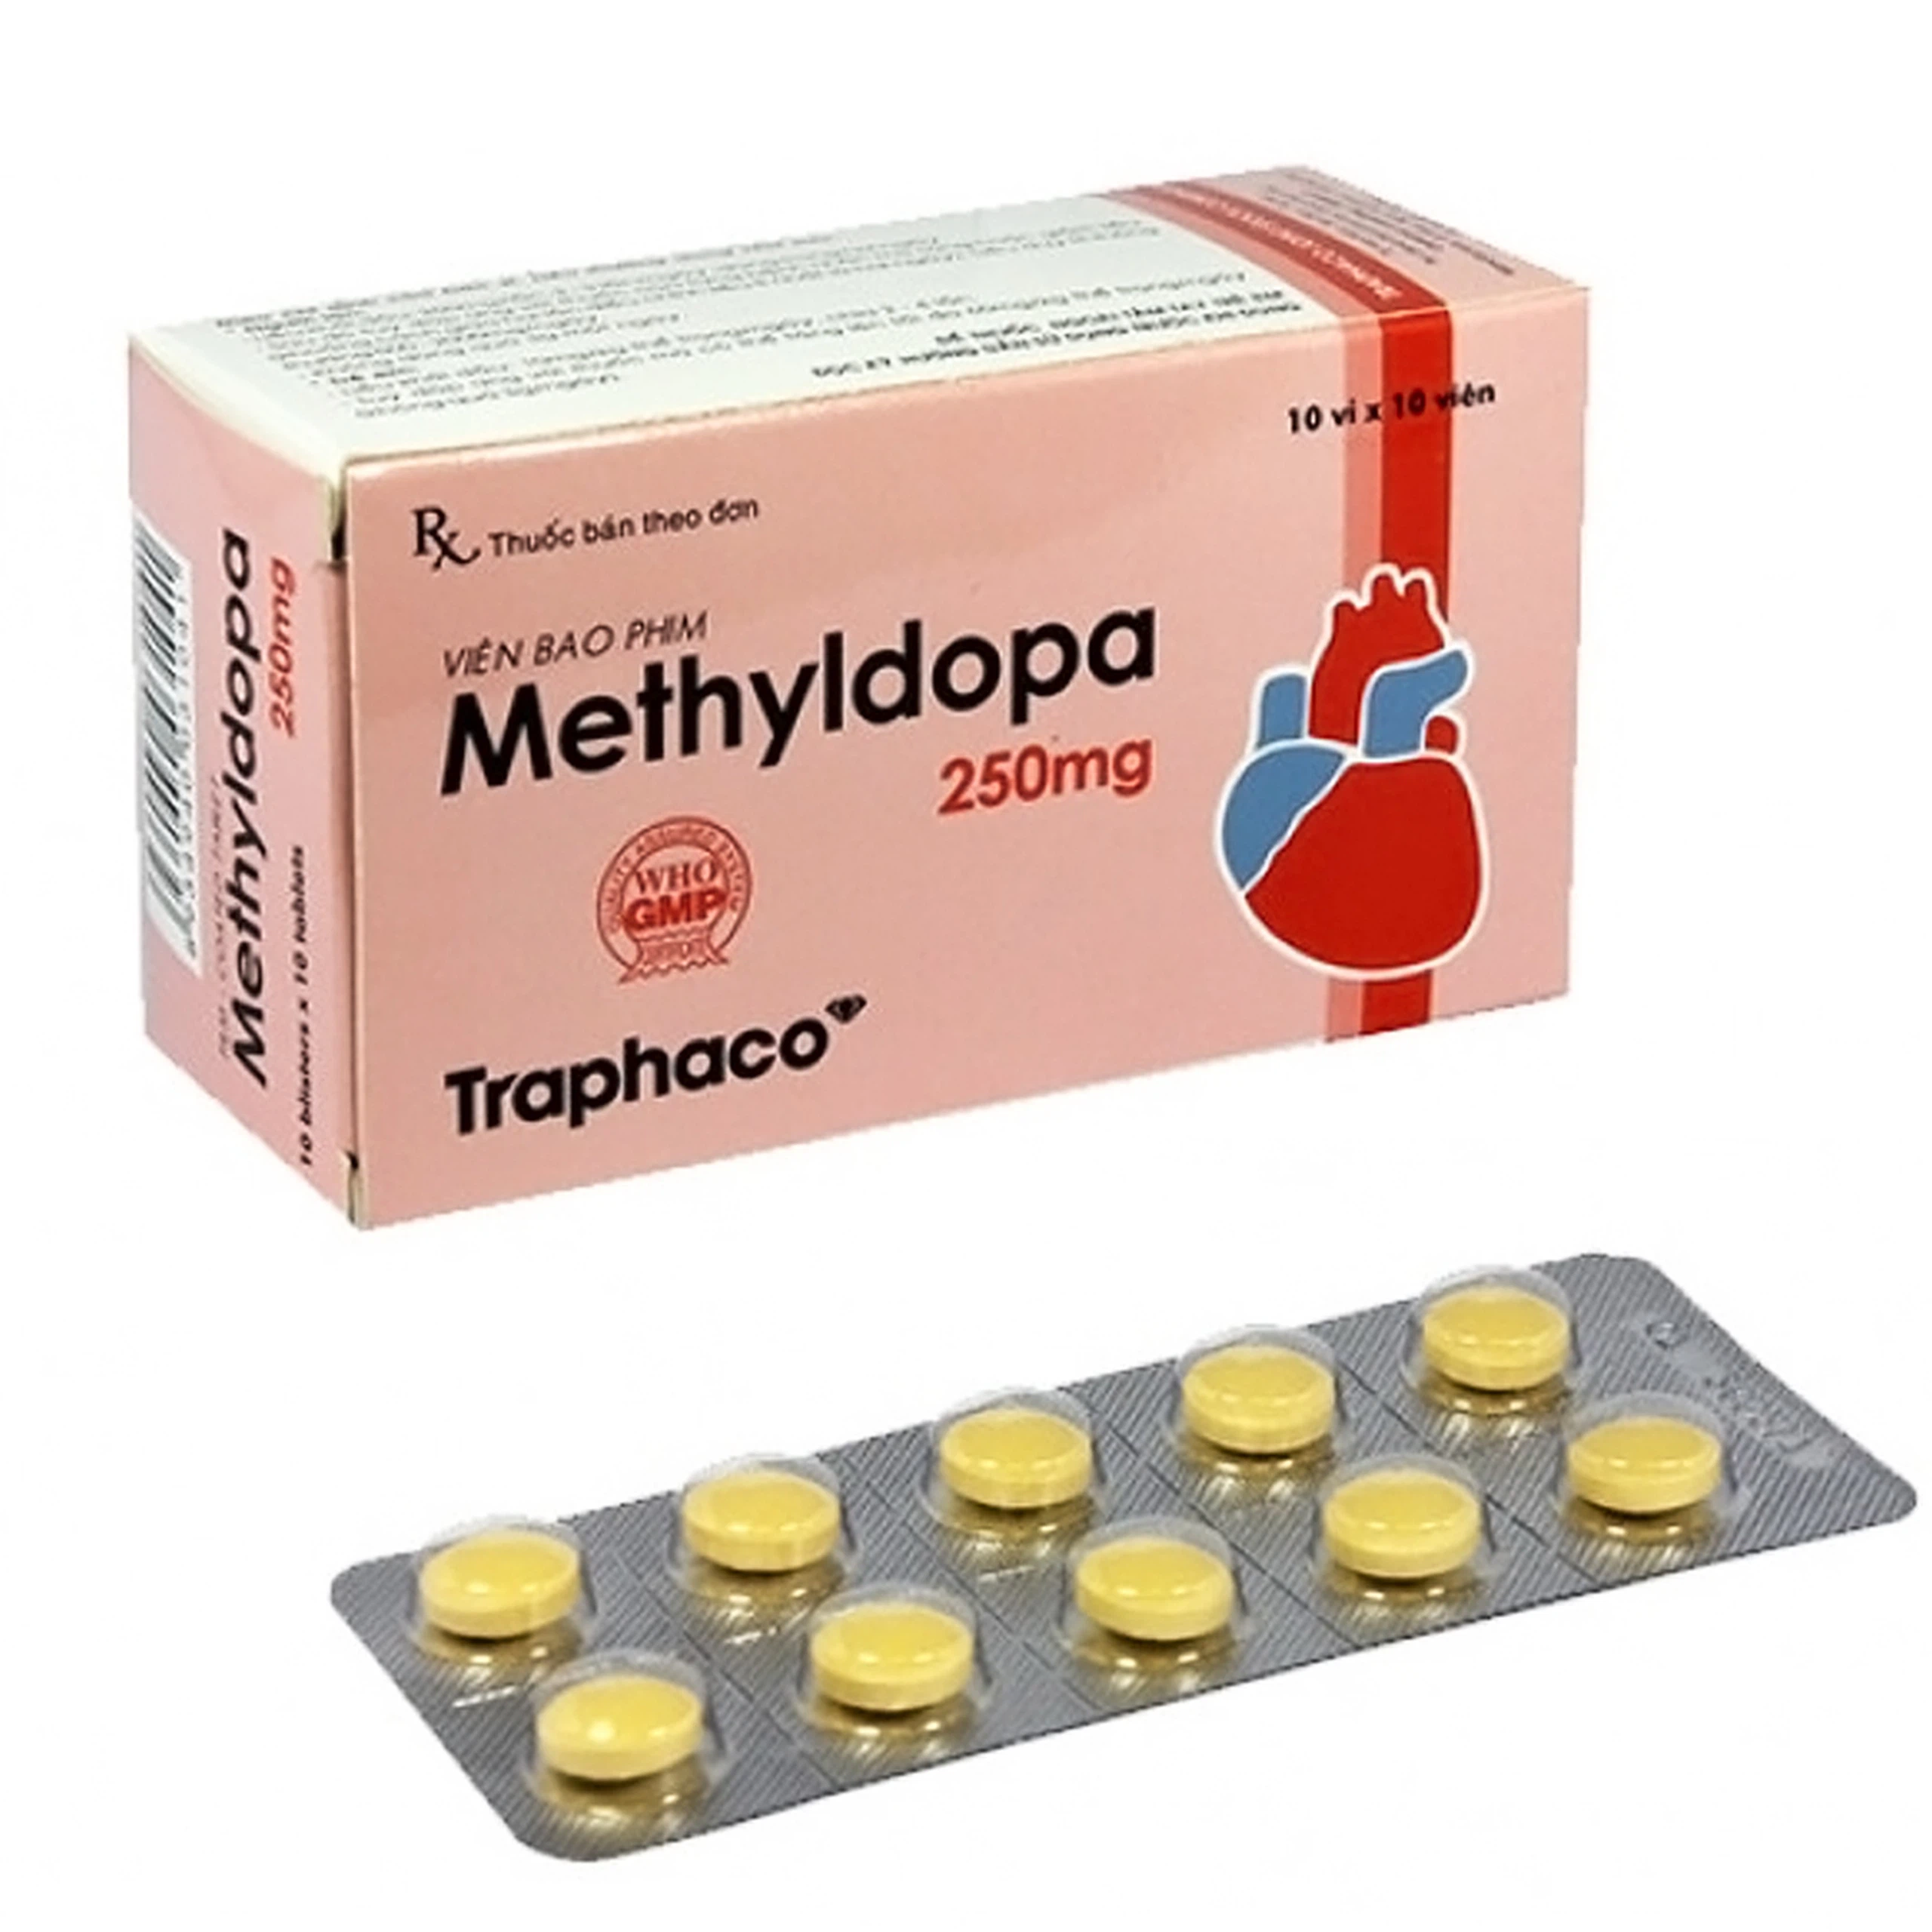 Viên nén Methyldopa 250mg Traphaco điều trị tăng huyết áp (10 vỉ x 10 viên)